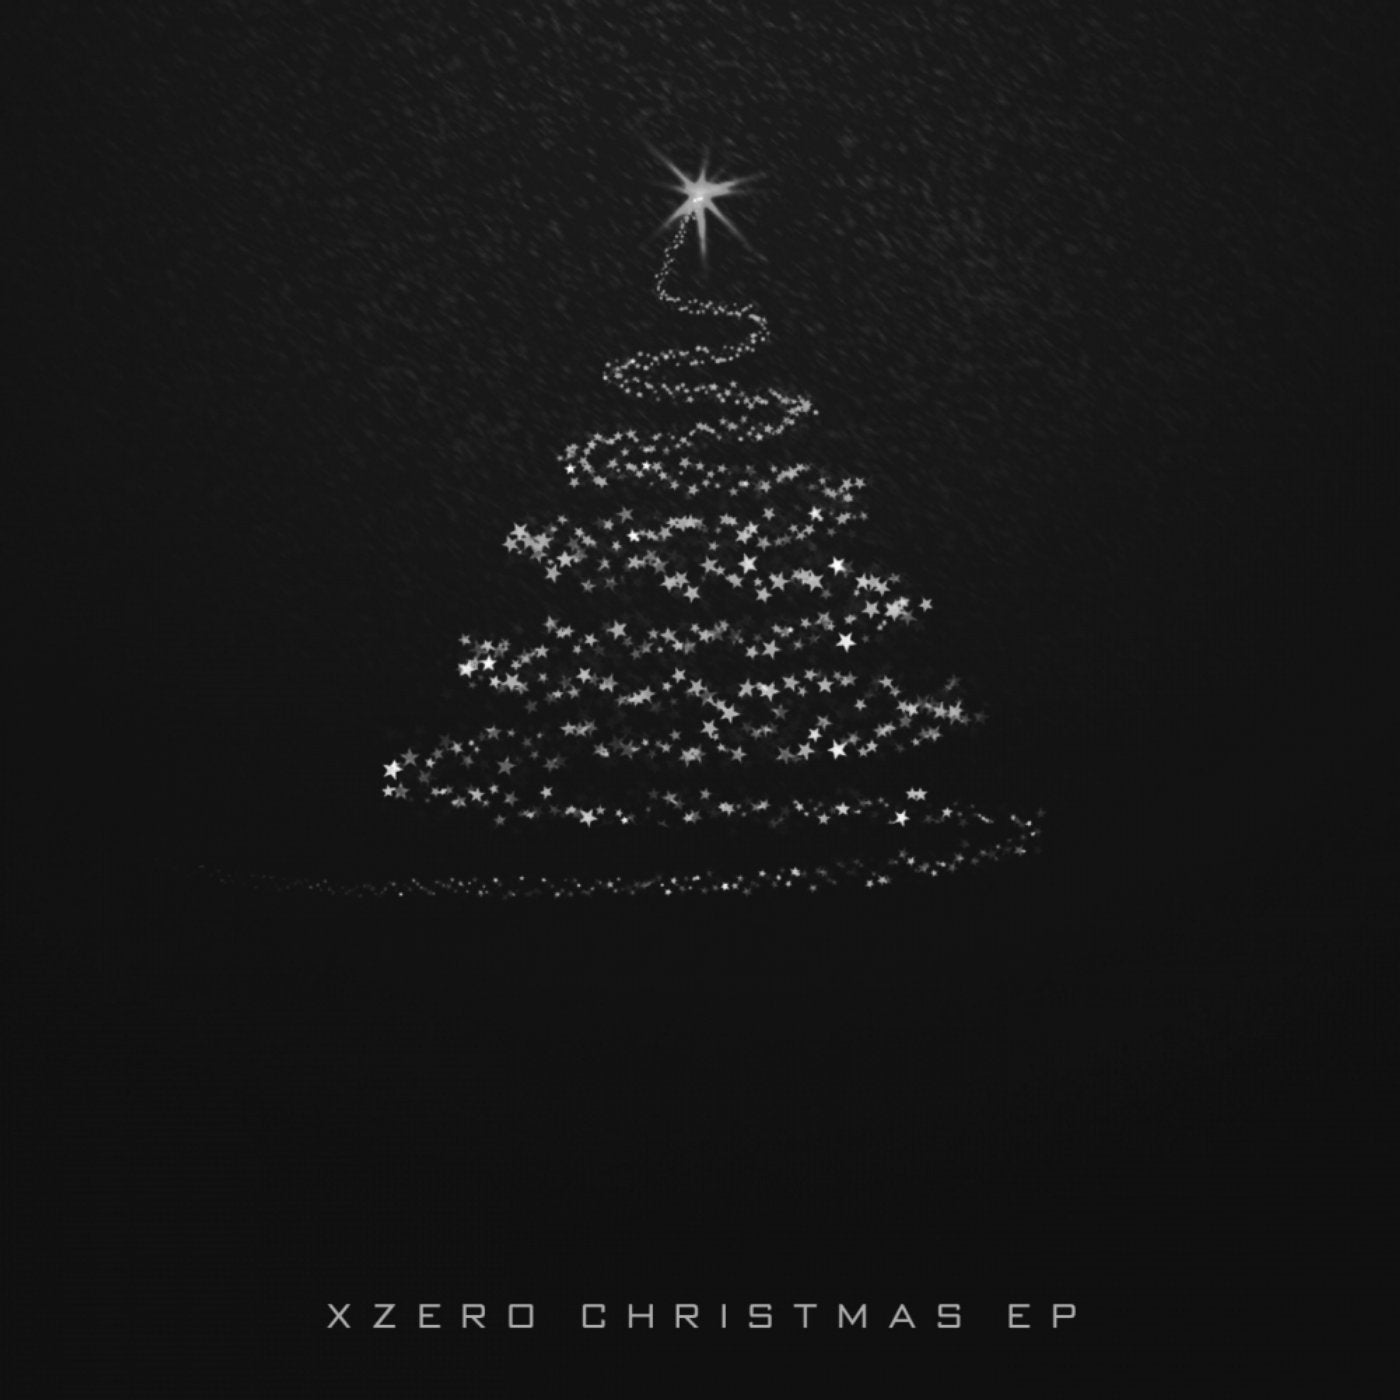 Xzero Christmas EP